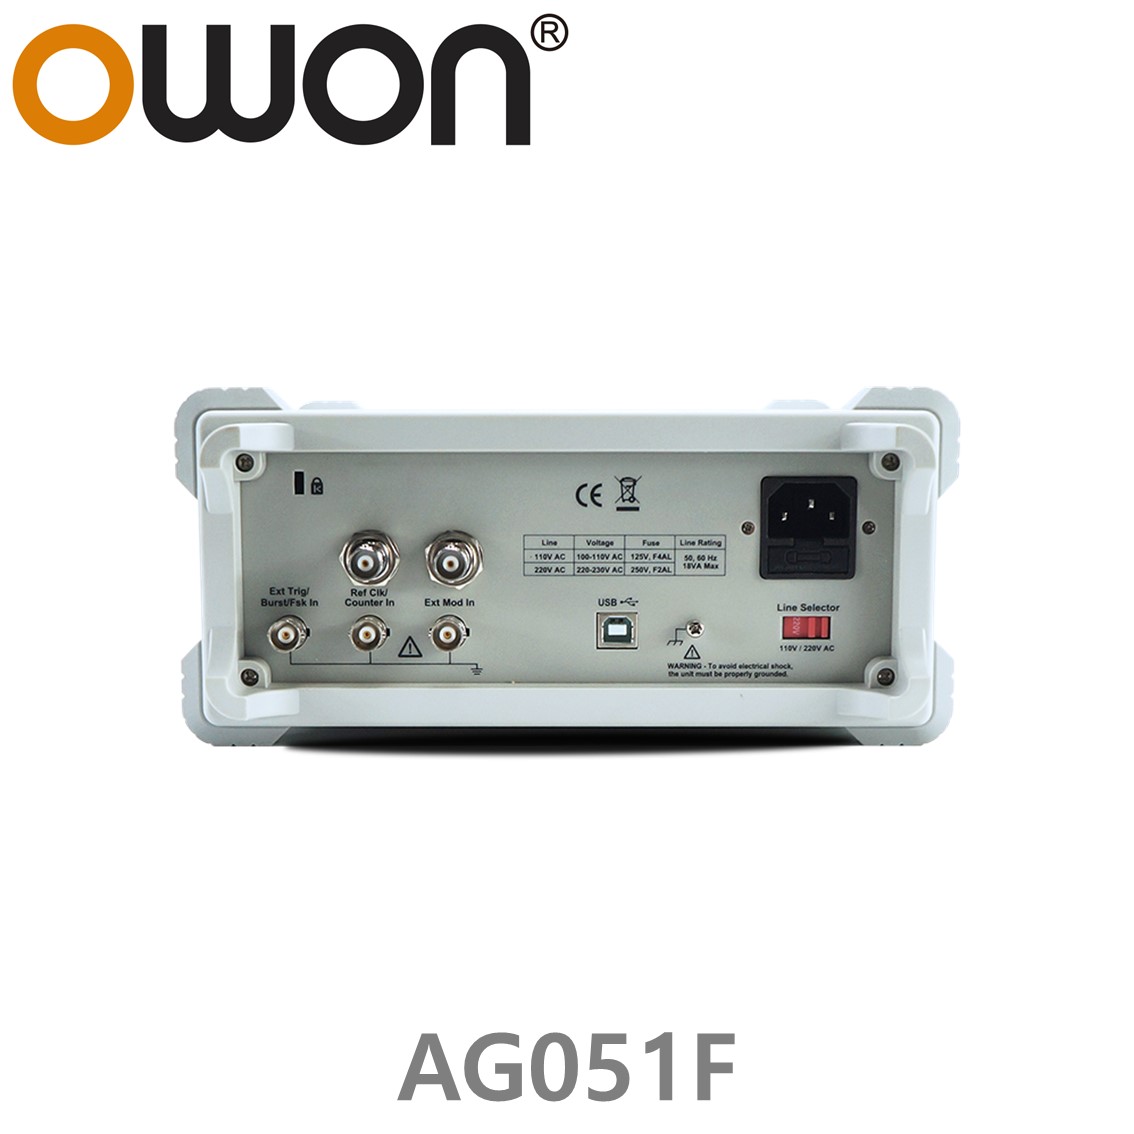 [ OWON ] AG051F 임의 파형발생기 1CH, 5MHz, 125MS/s, 포괄적 변조, AM, FM, PM, FSK